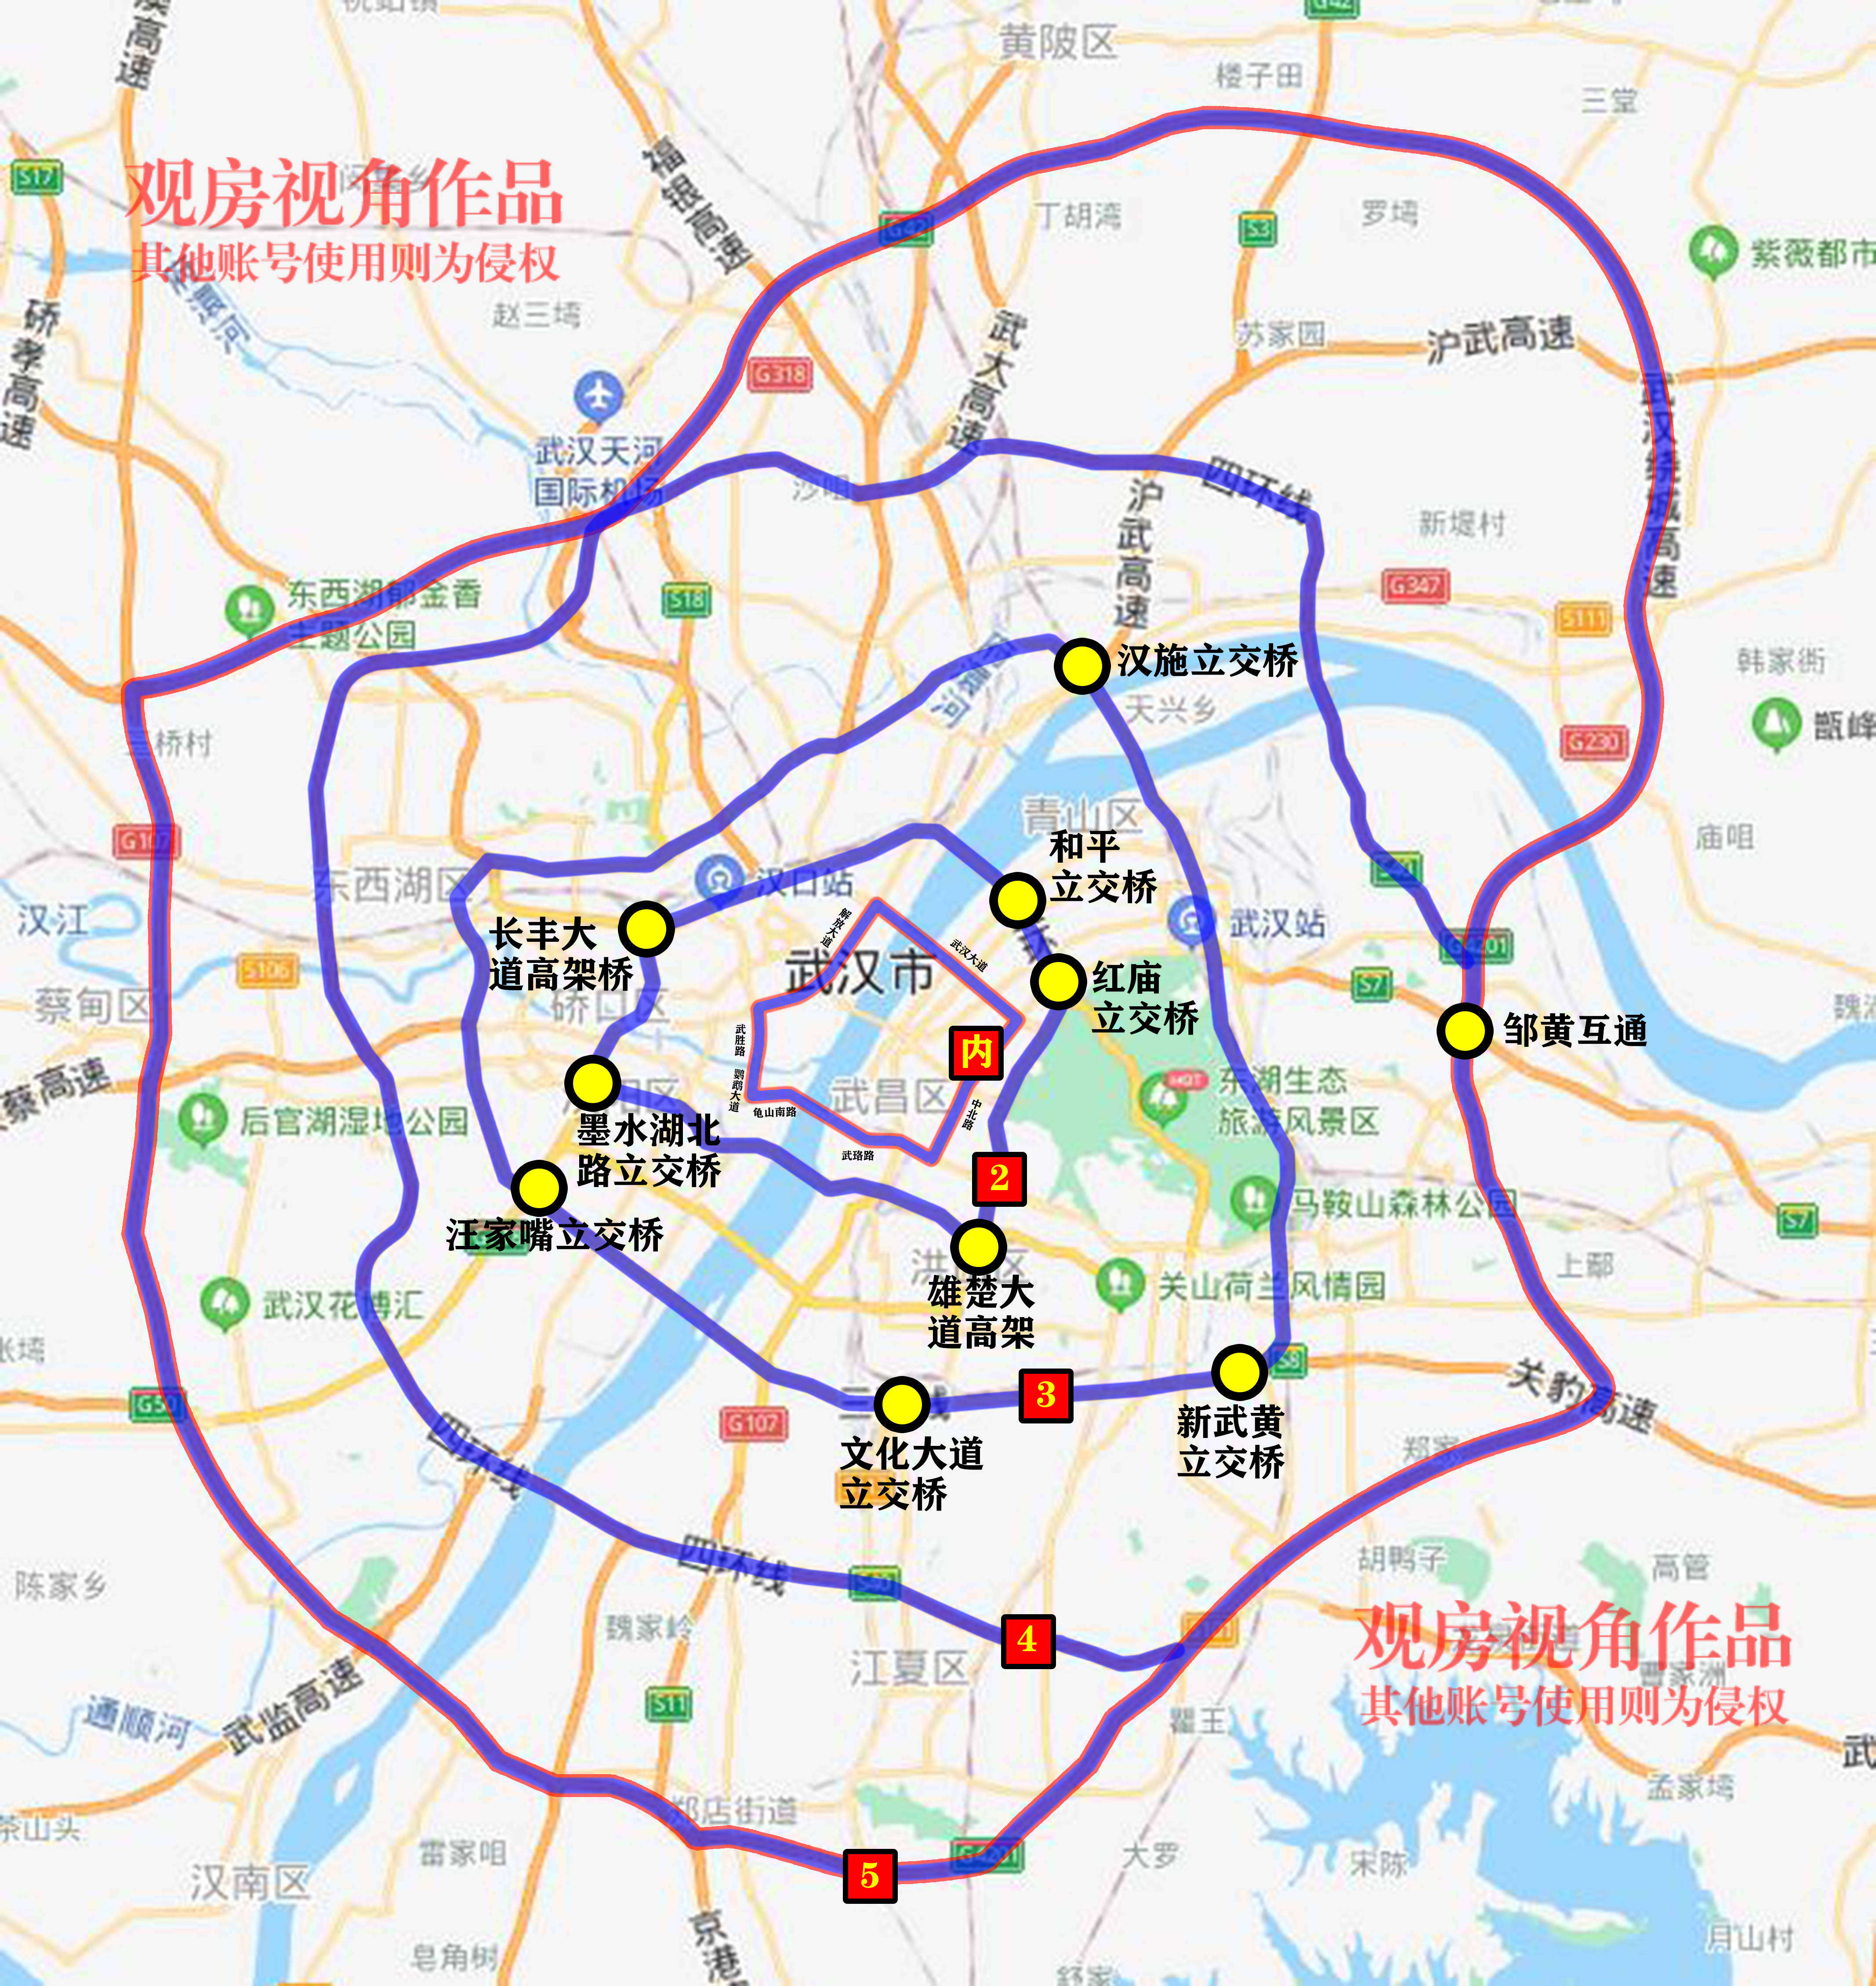 如今武汉在陆路交通方面持续发力,对标北京七环,武汉的五环折射出强